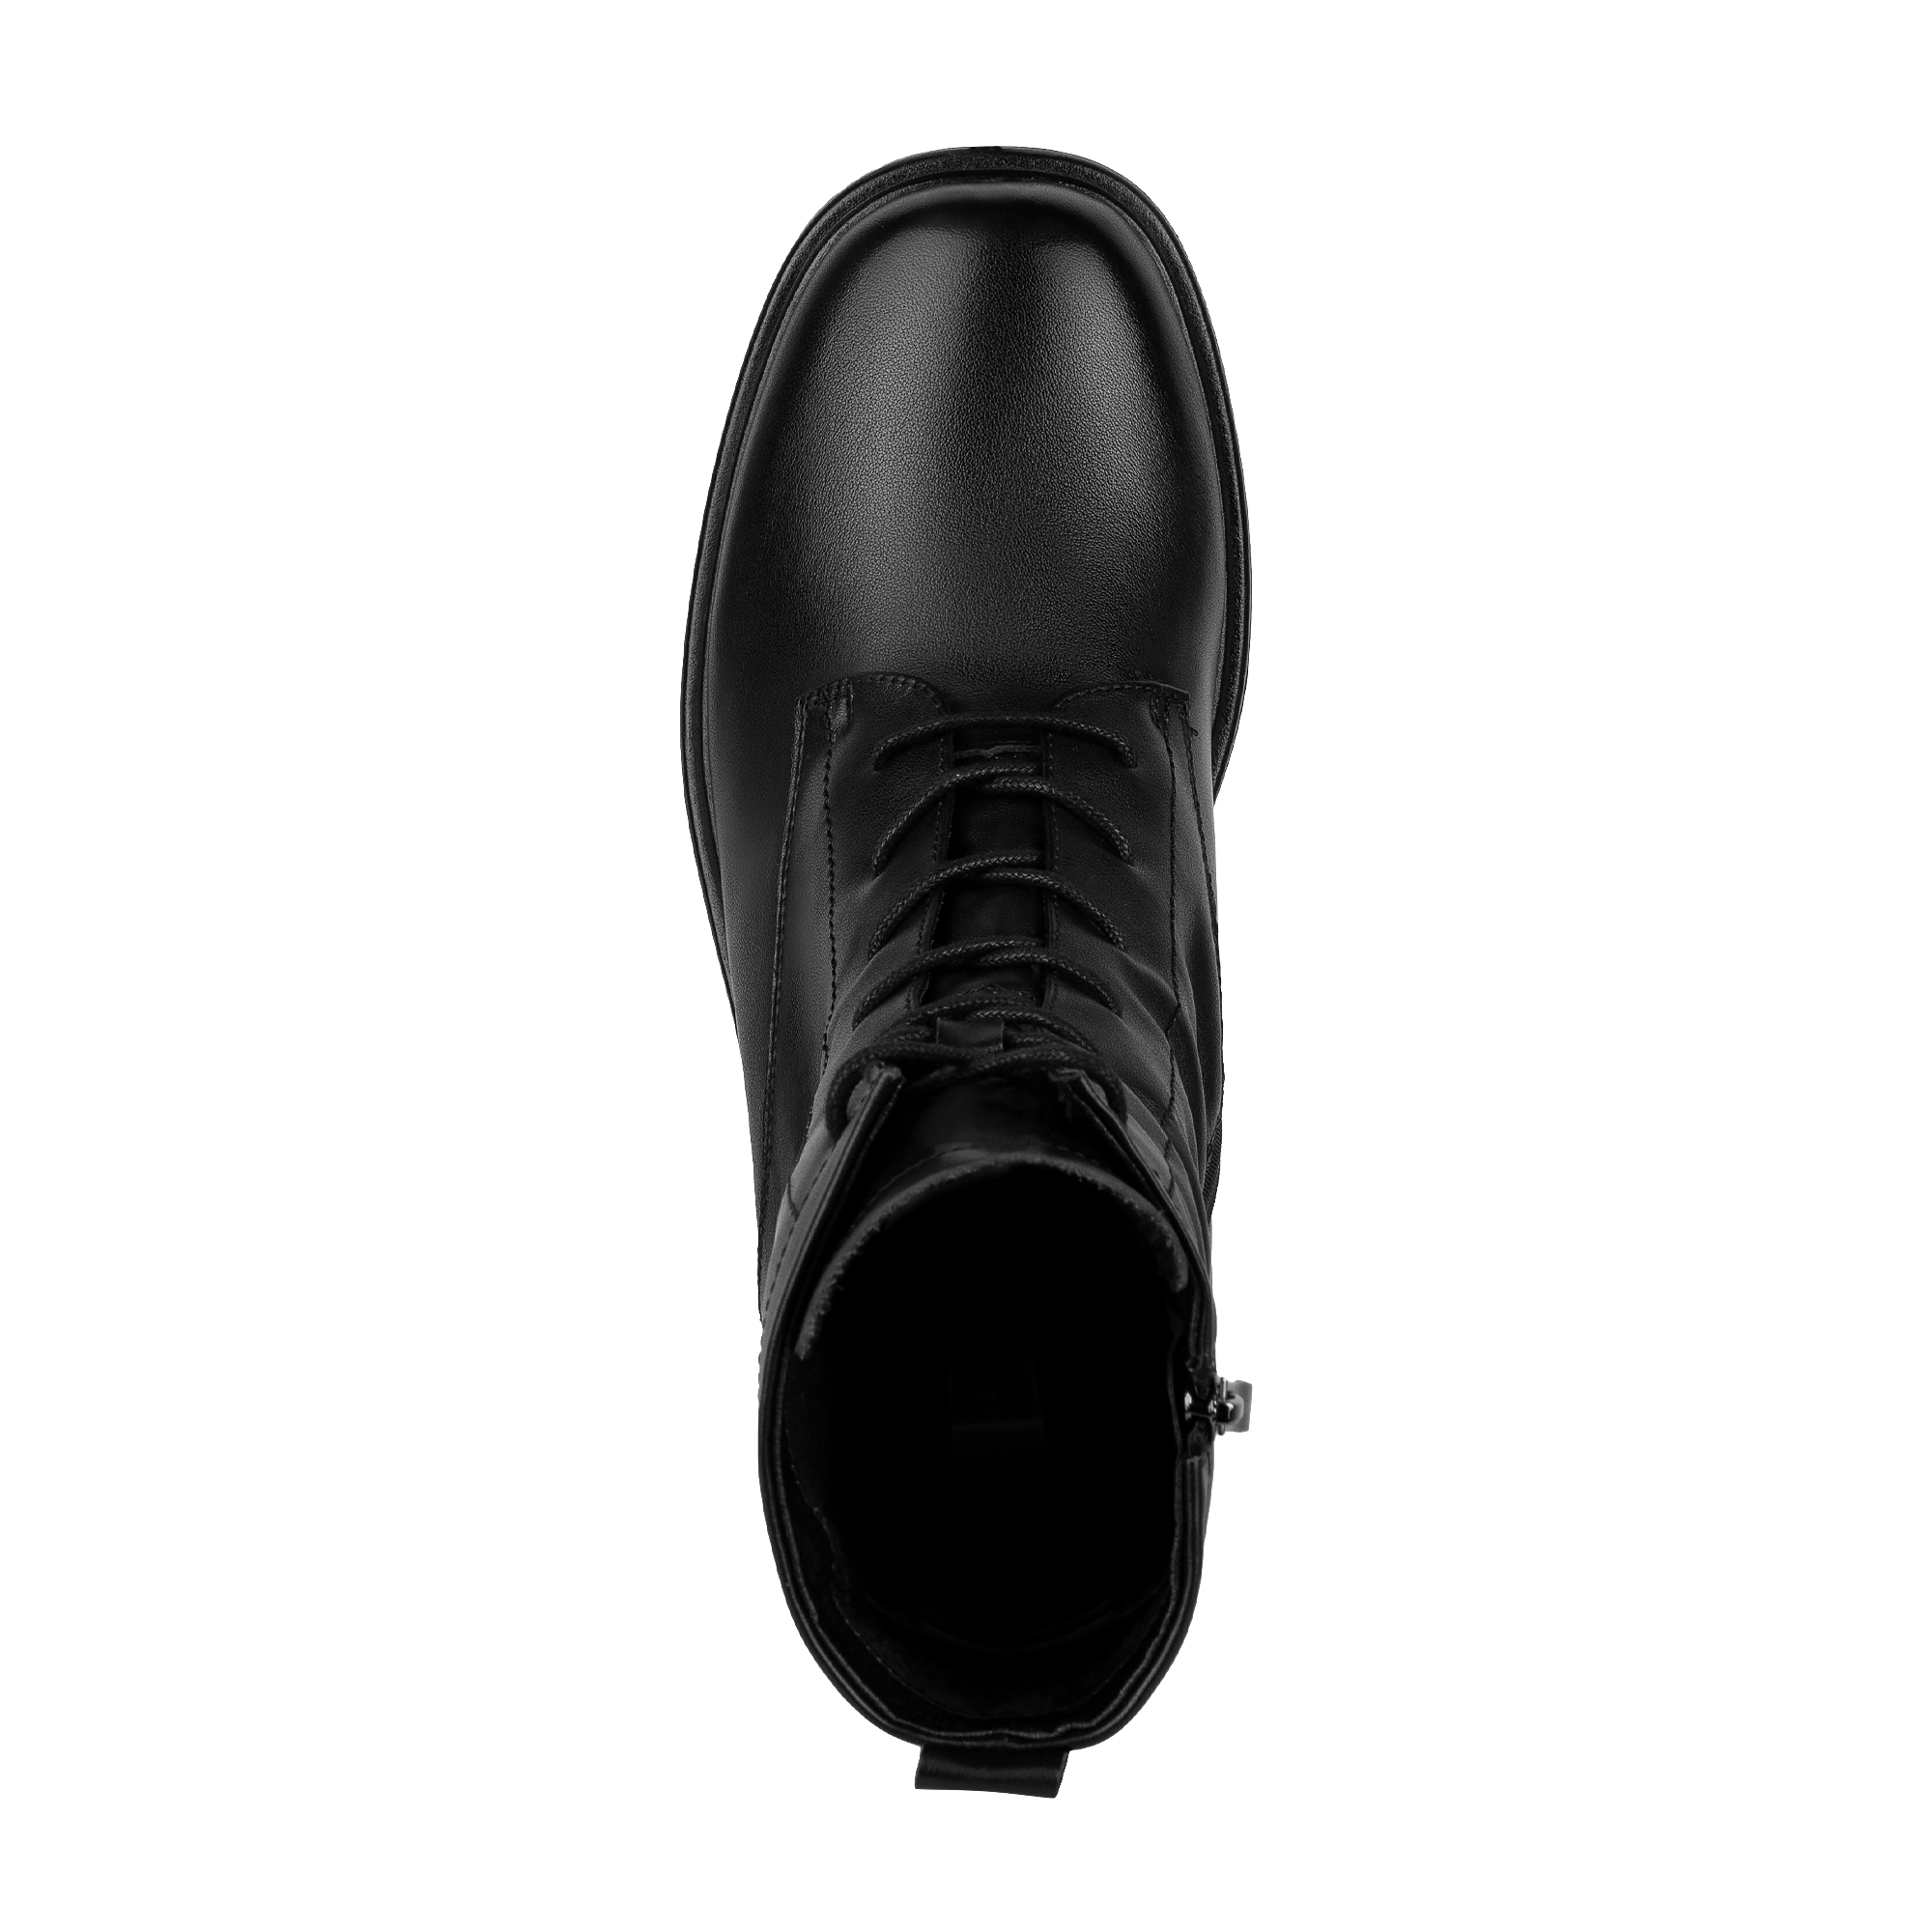 Ботинки Thomas Munz 234-070A-2102, цвет черный, размер 37 - фото 5